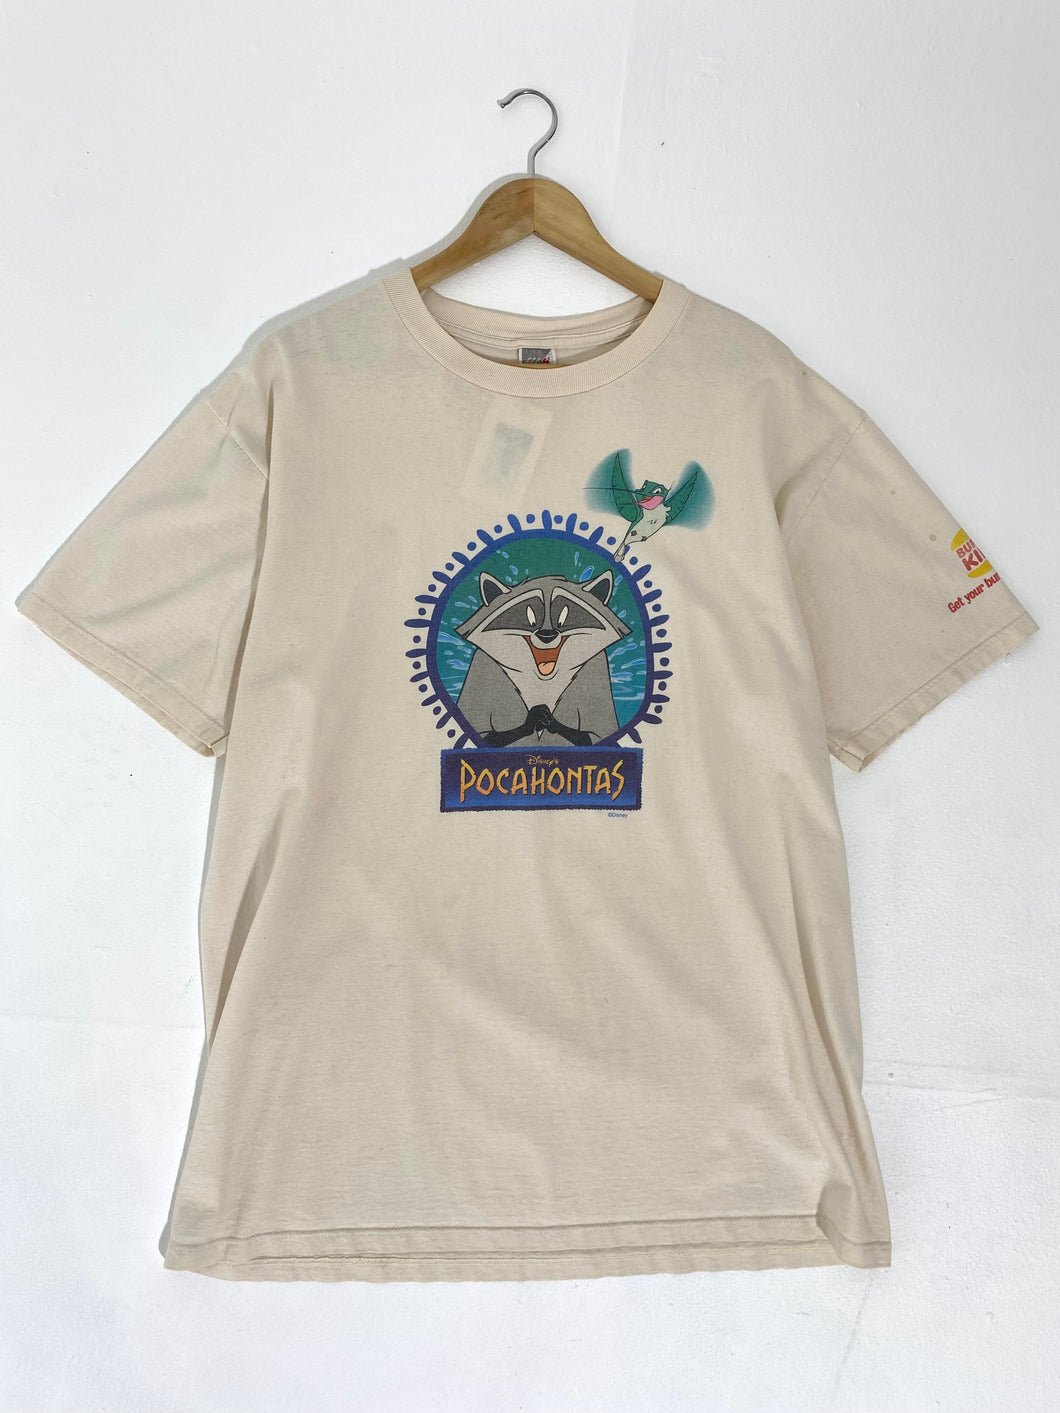 Vintage 1990’s Pocahontas / Burger King T-Shirt